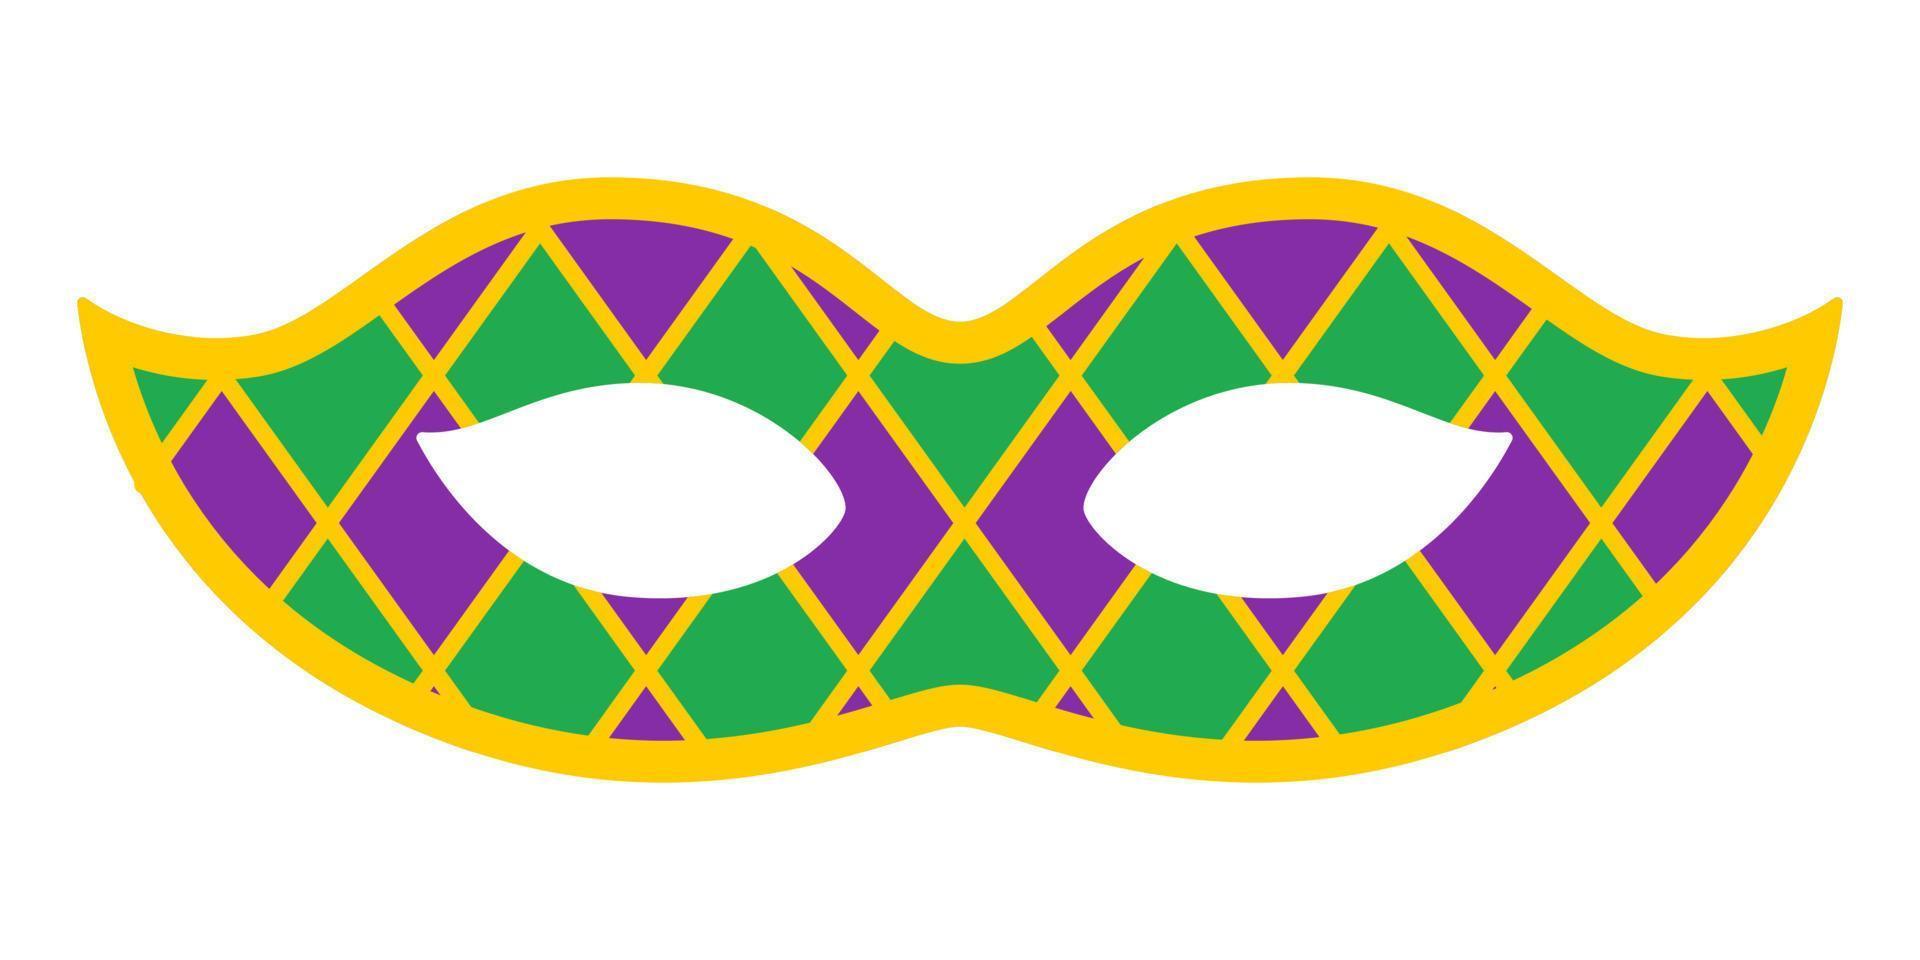 vektor pläd karneval mask. mardi gras mask. design för fett tisdag karneval. färgrik maskerad illustration. karneval mask för traditionell Semester eller festival.